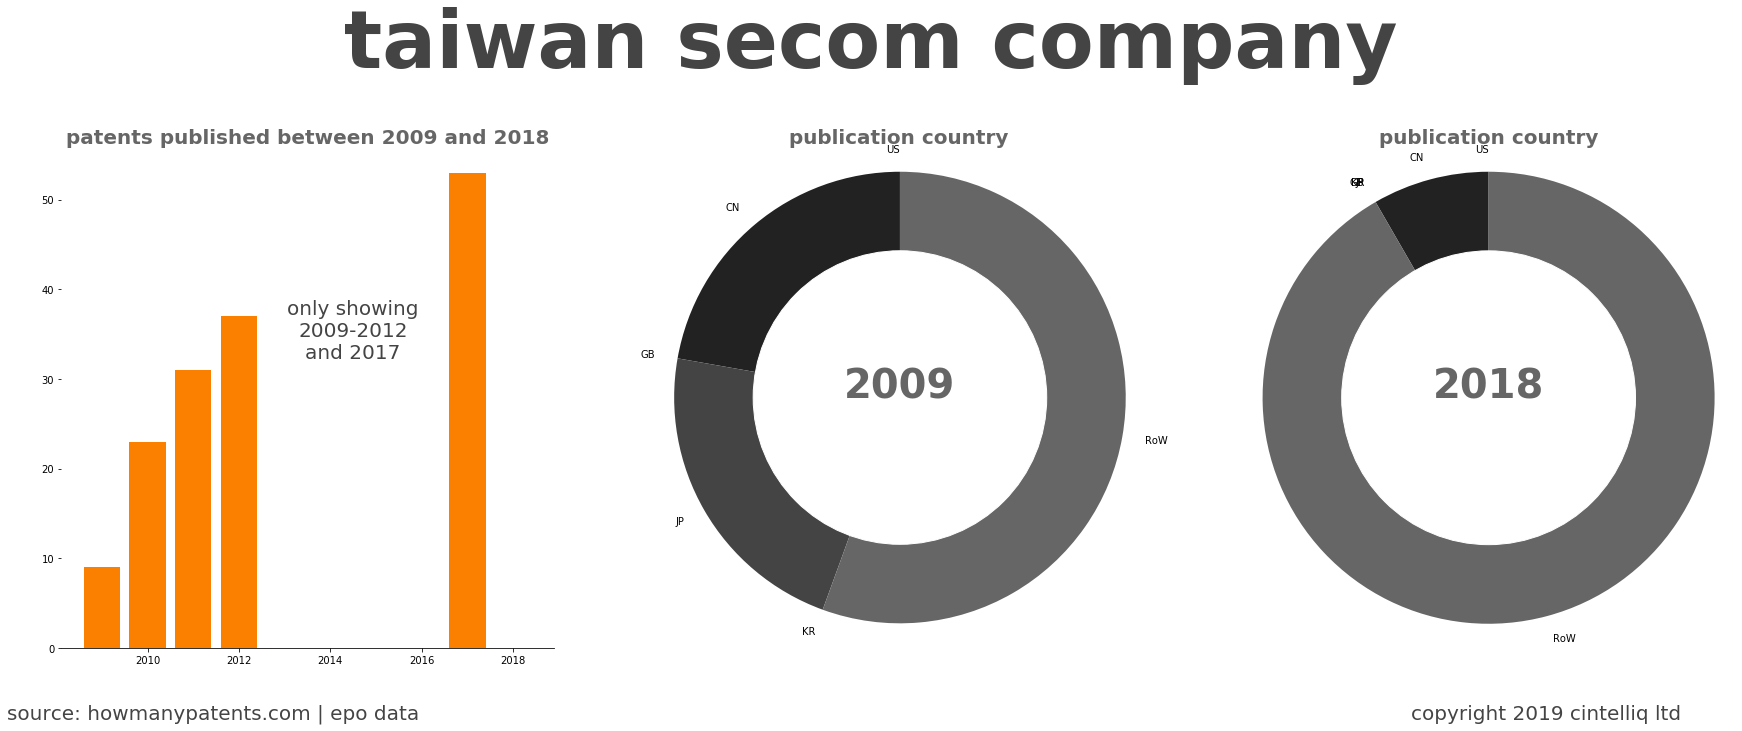 summary of patents for Taiwan Secom Company